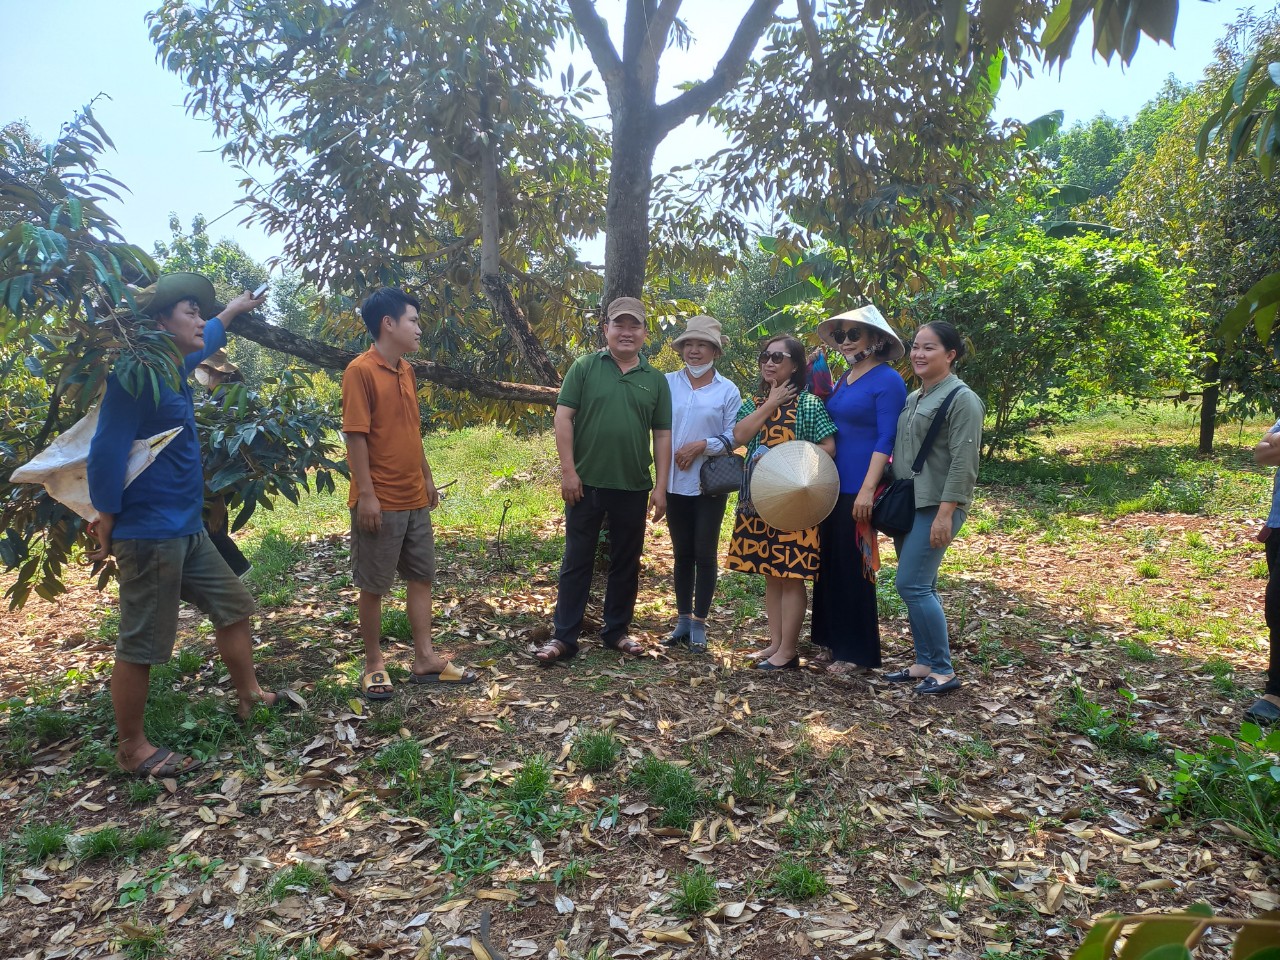 Hội Nữ Doanh nhân tỉnh Bình Phước cùng Công ty Cổ phần Tập đoàn Xuất- Nhập khẩu trái cây Chánh Thu và các doanh nghiệp khảo sát vùng nguyên liệu tại huyện Phú Riềng.